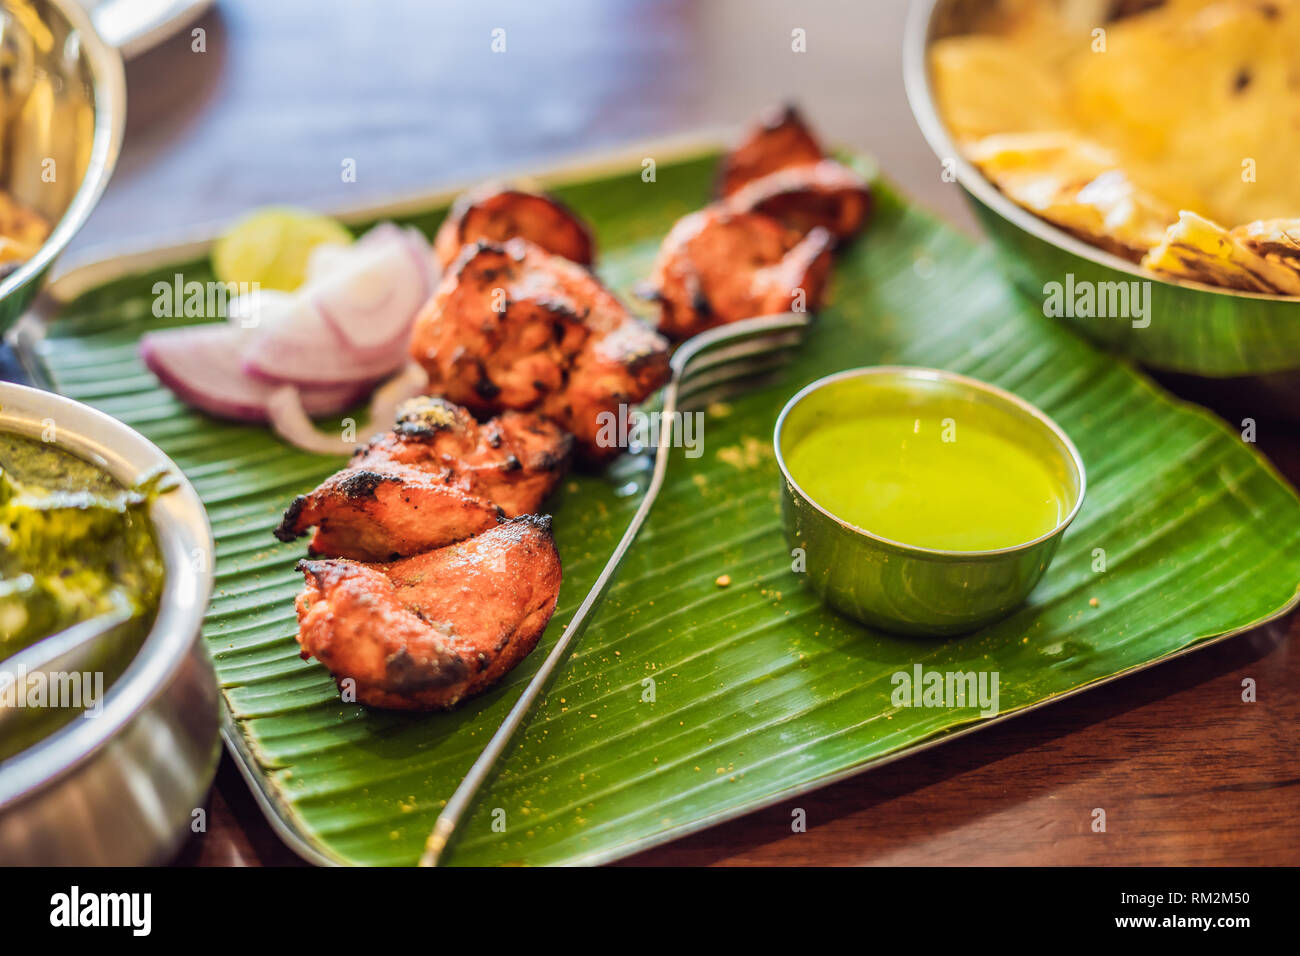 Un assortiment de nourriture indienne sur fond de bois sombre. Plats et apéritifs de la cuisine indienne. Curry de poulet, beurre, riz, lentilles, paneer, samosa, naan Banque D'Images